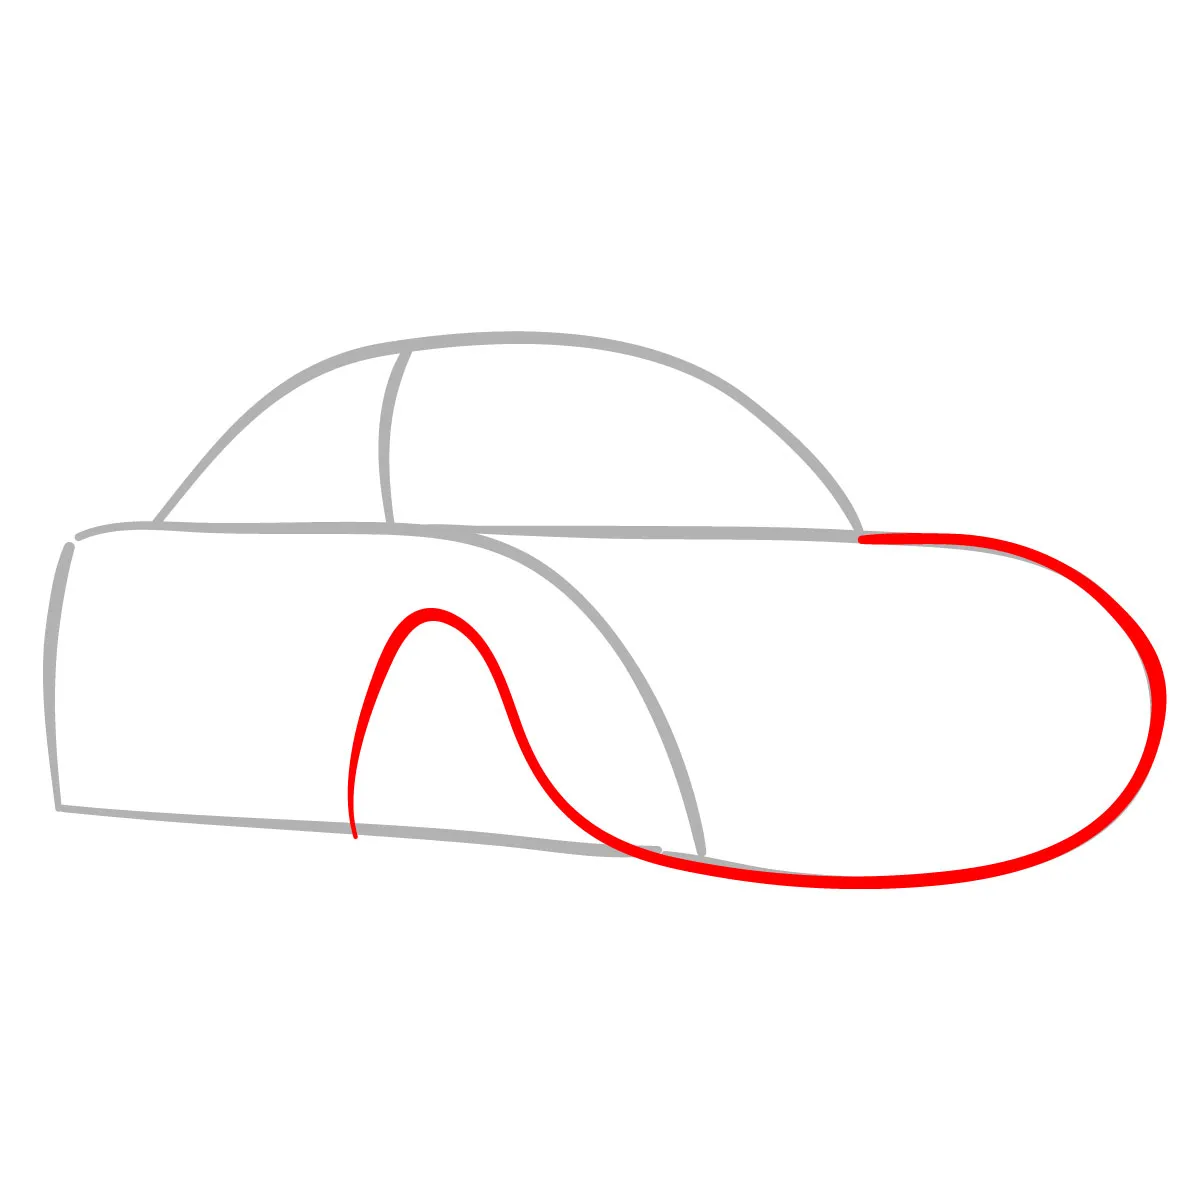 Cách vẽ các loại ôtô đơn giản  VnExpress